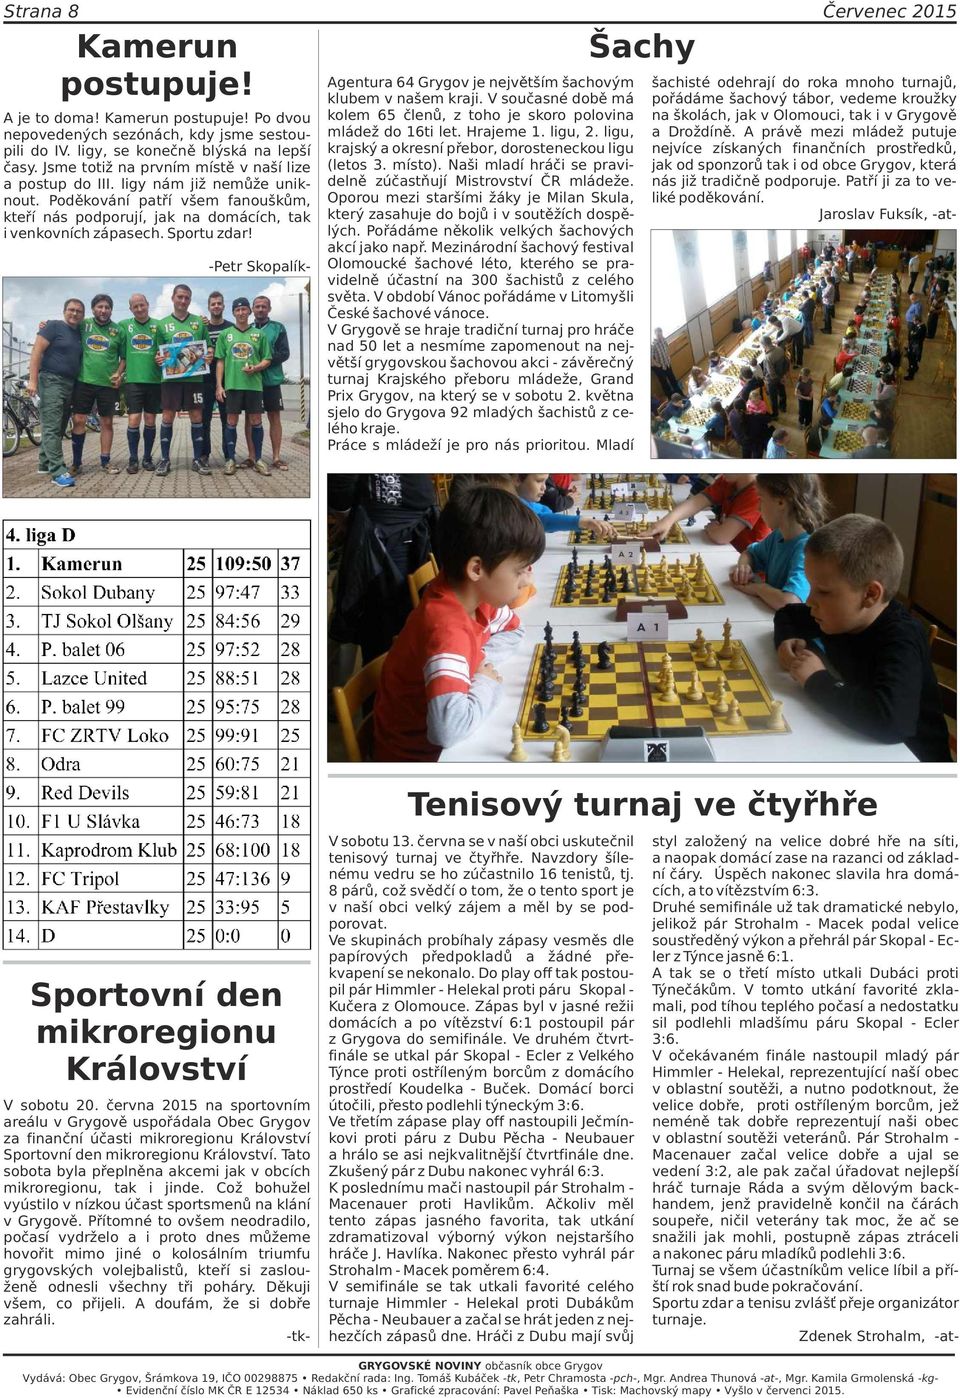 -Petr Skopalík- Agentura 64 Grygov je největším šachovým klubem v našem kraji. V současné době má kolem 65 členů, z toho je skoro polovina mládež do 16ti let. Hrajeme 1. ligu, 2.